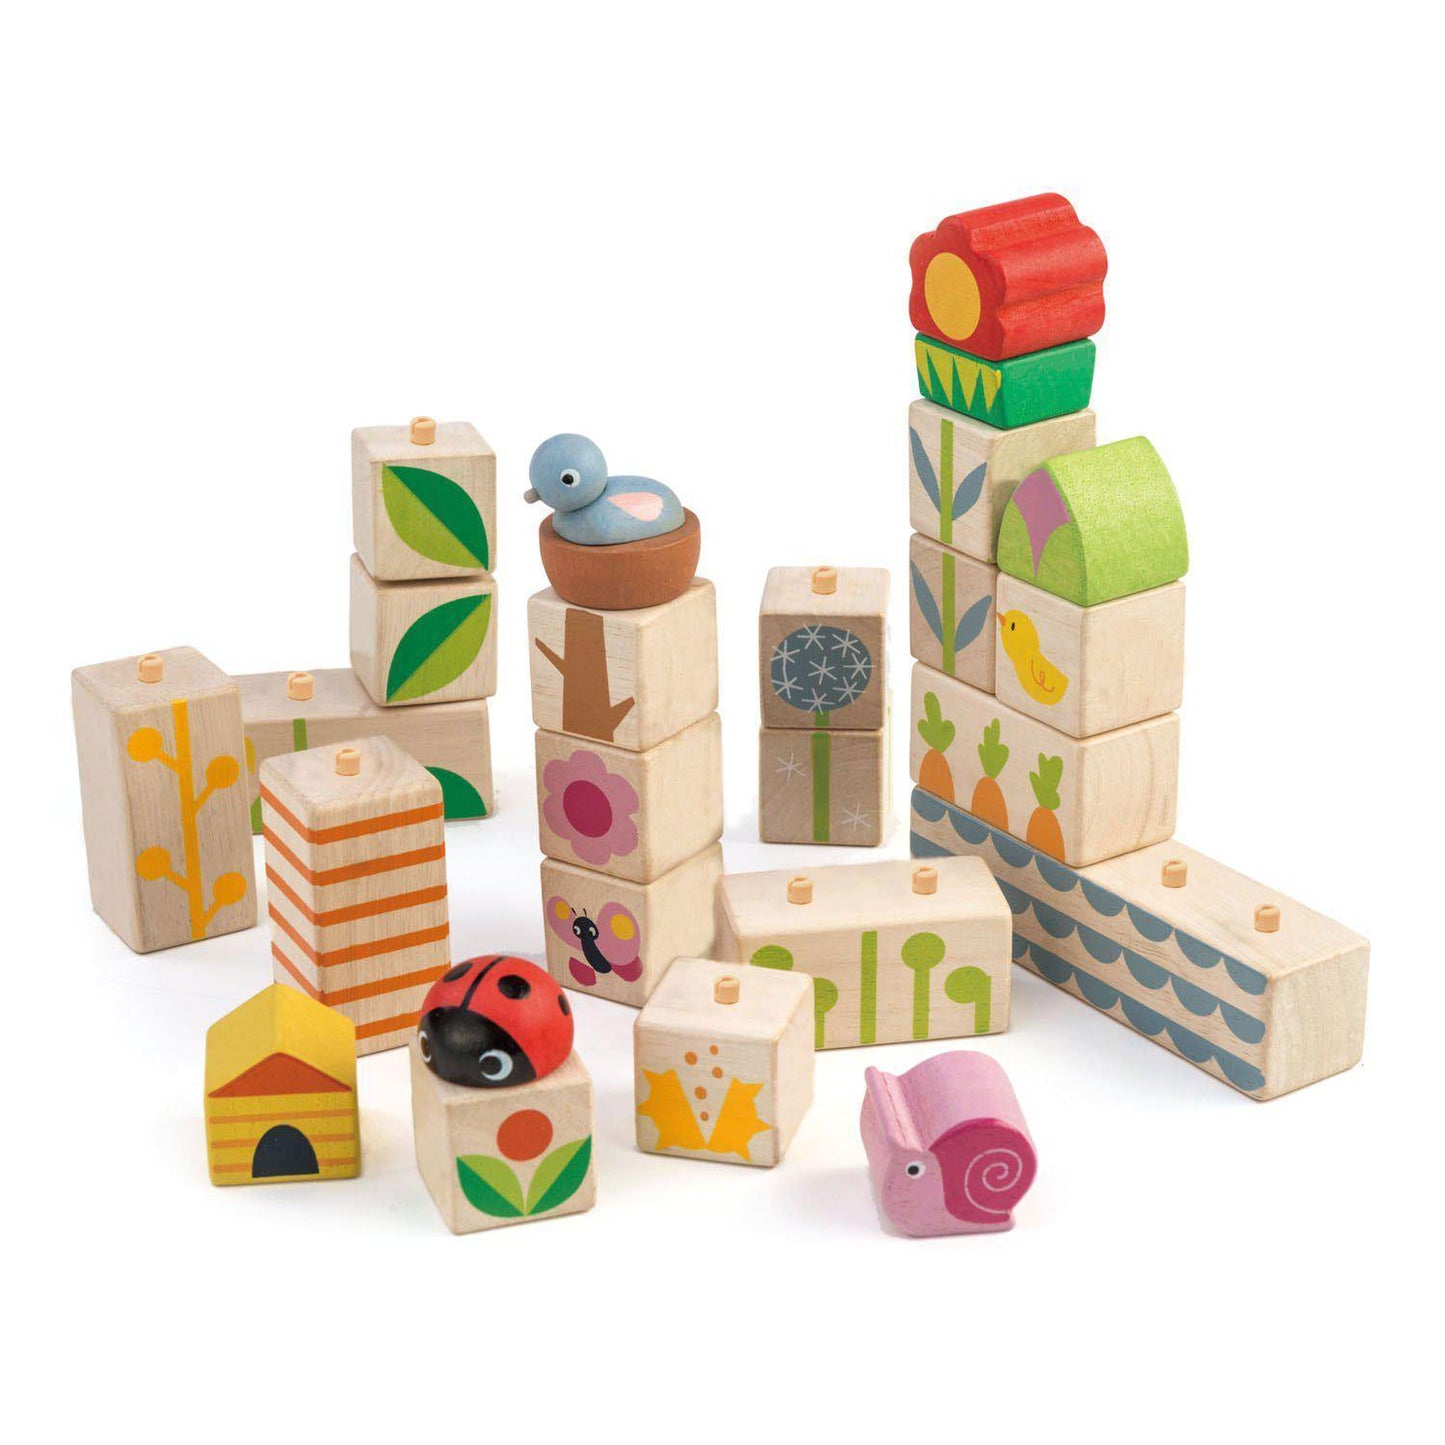 Felpakolható kerti illusztrációs kockák, prémium minőségű fából - Garden Blocks - 24 darab - Tender Leaf Toys-Tender Leaf Toys-2-Játszma.ro - A maradandó élmények boltja